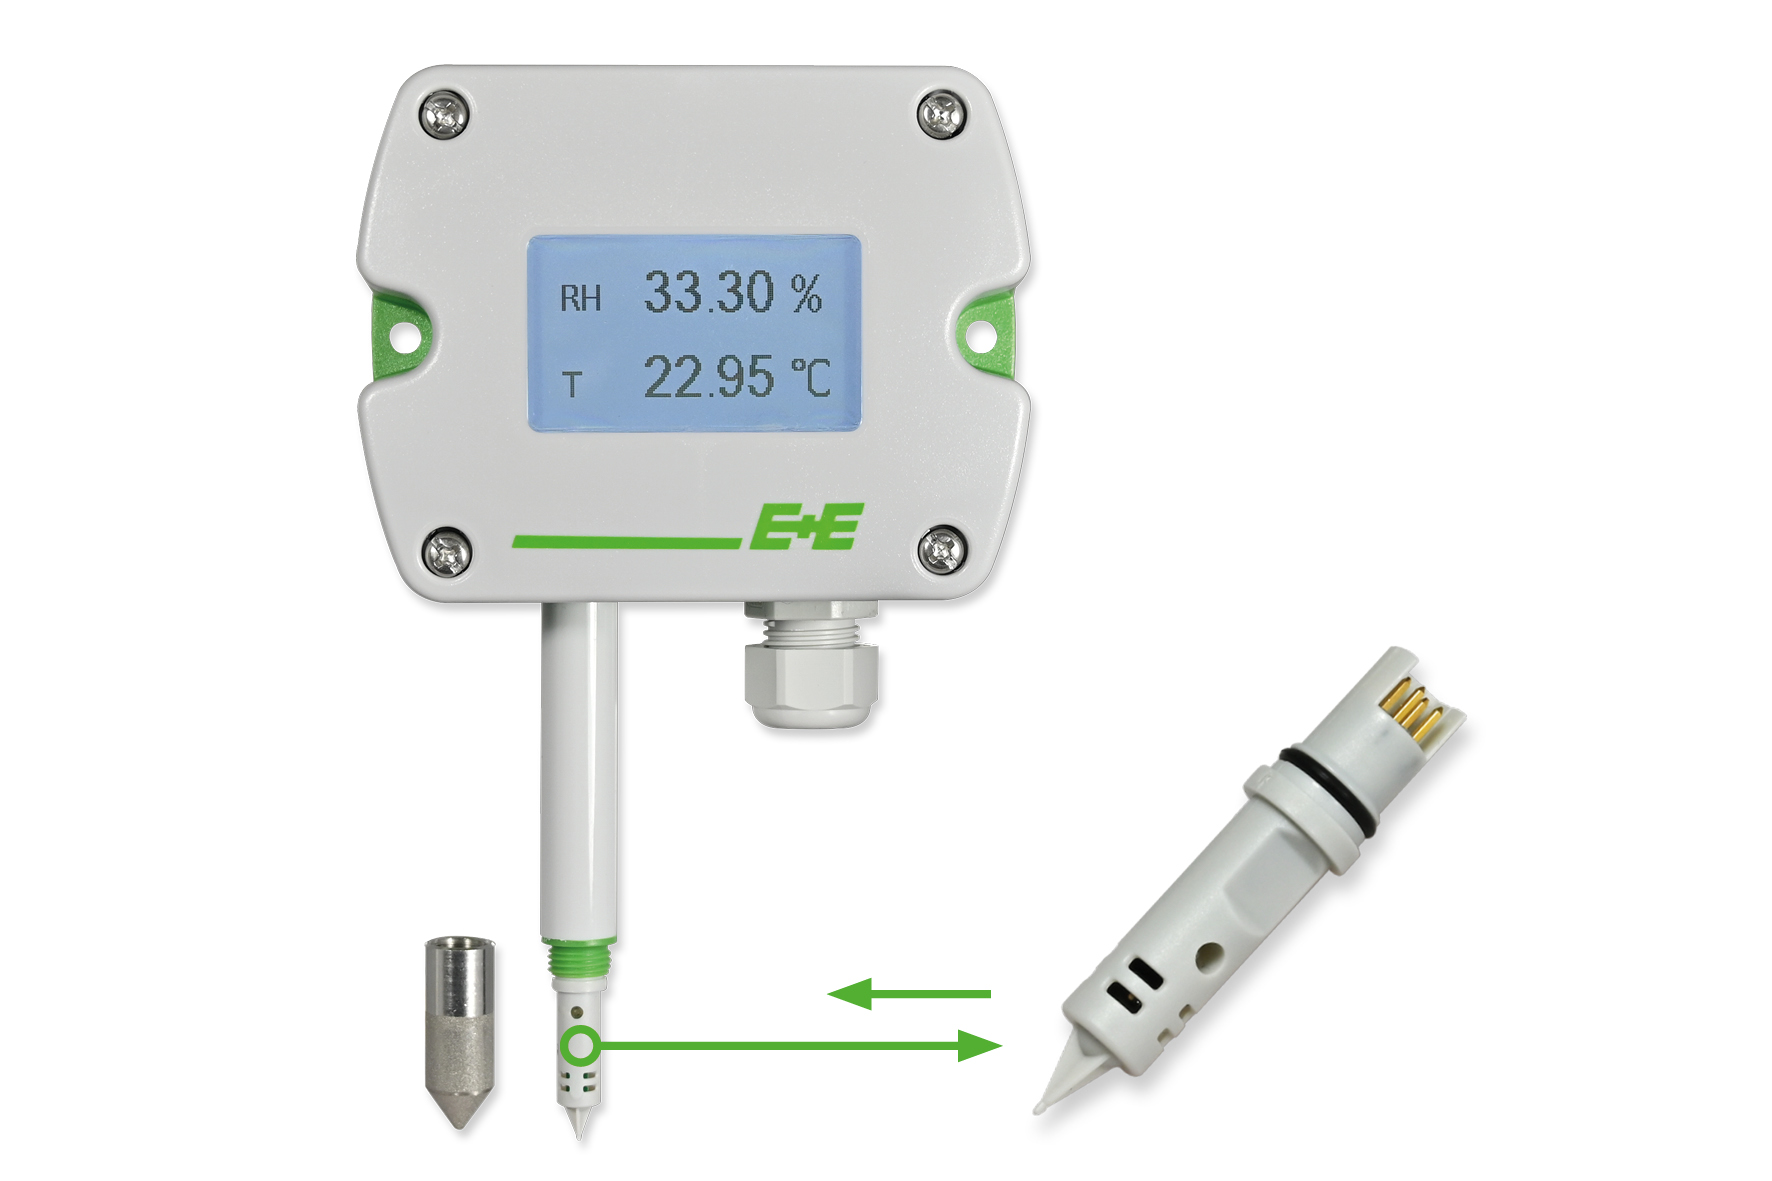 E+E Vochtigheids- en temperatuursensor met verwisselbare sensor-tip - Betrouwbaar blijven meten zonder omslachtige kalibraties!